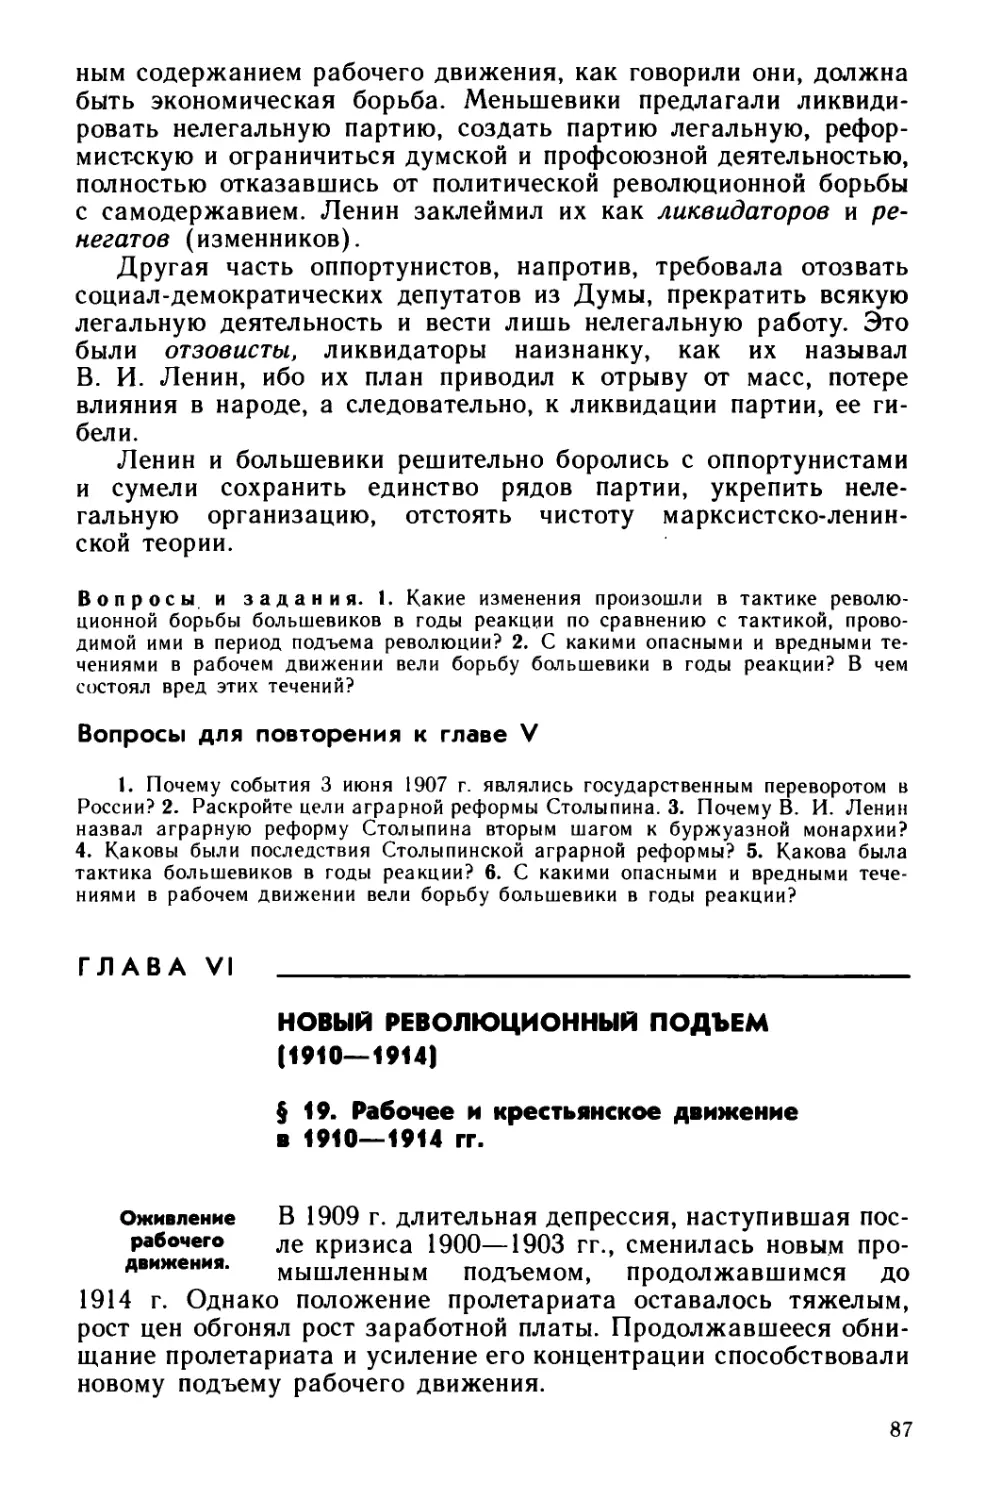 § 19. Рабочее и крестьянское движение в 1910—1914 гг.